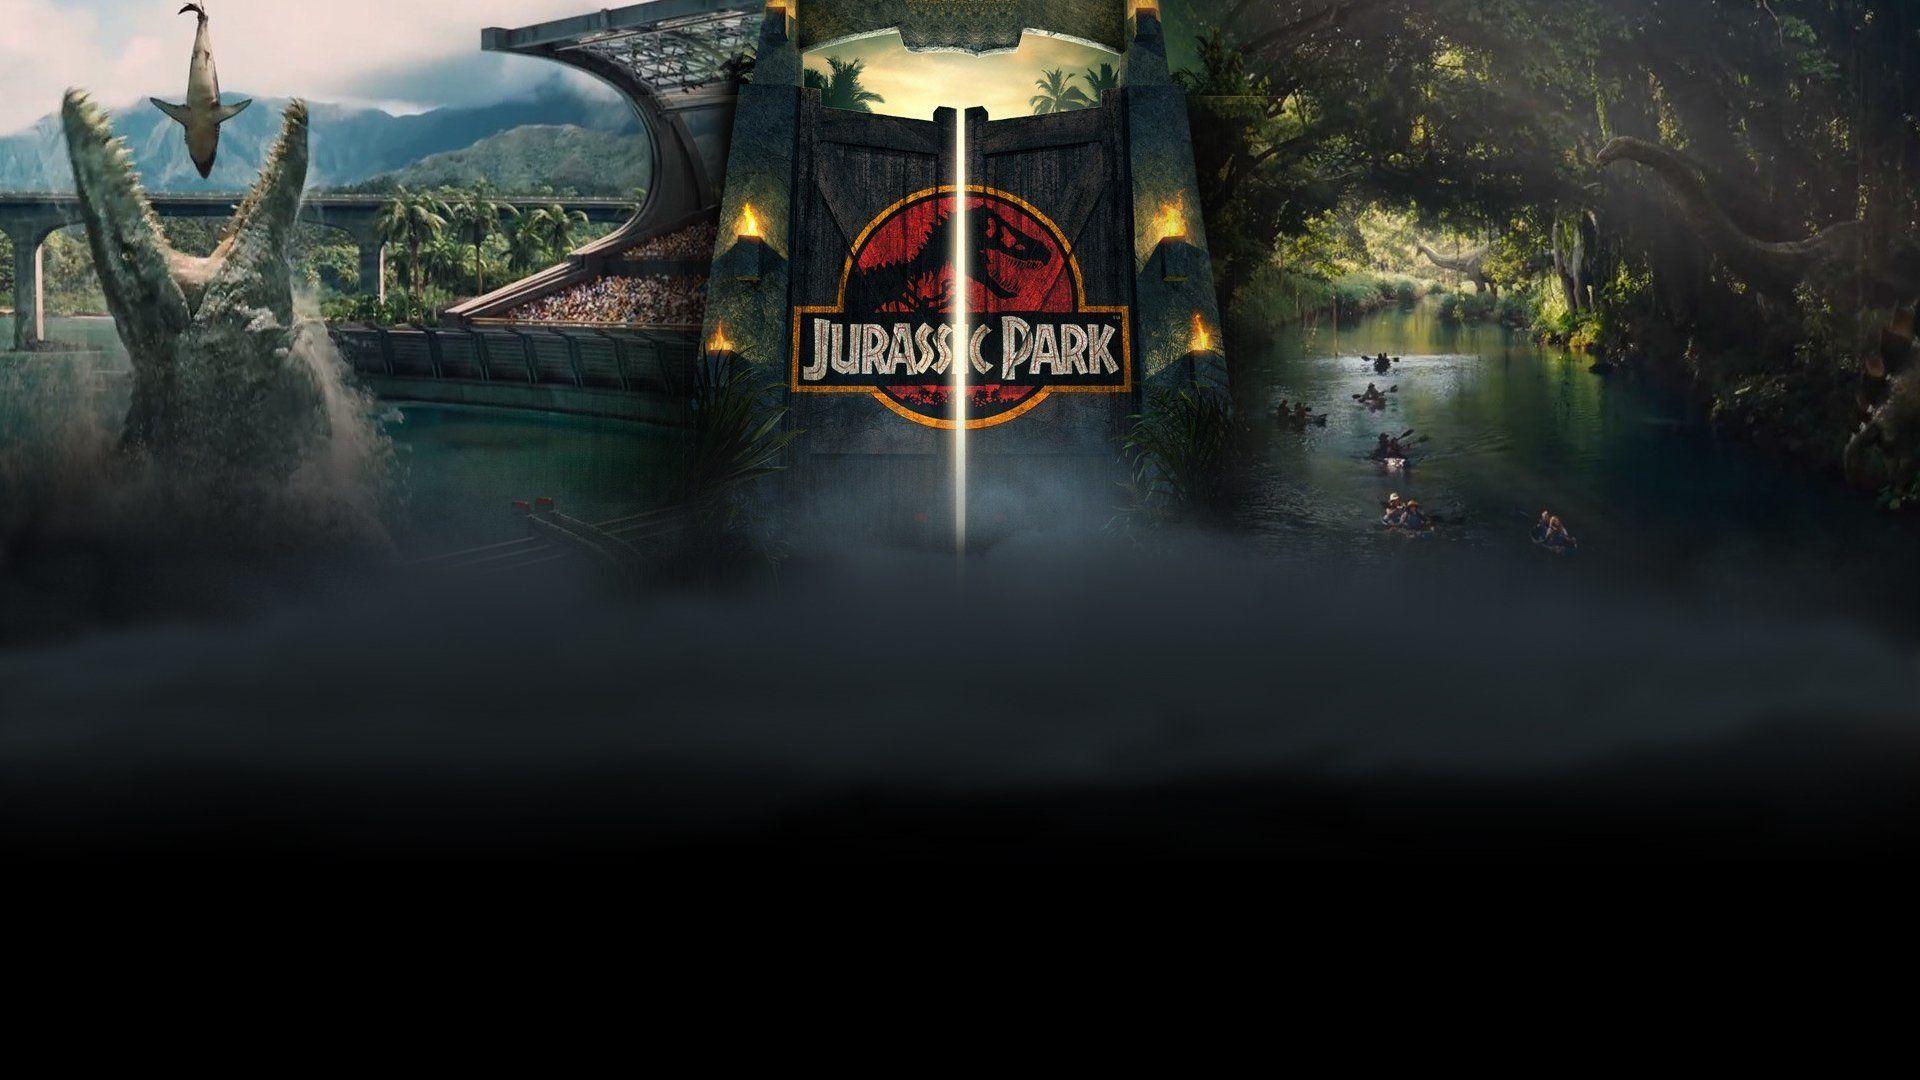 Jurassic Park Wallpaper 4k - Jurassic Park Wallpapers Hd | Bodenfwasu